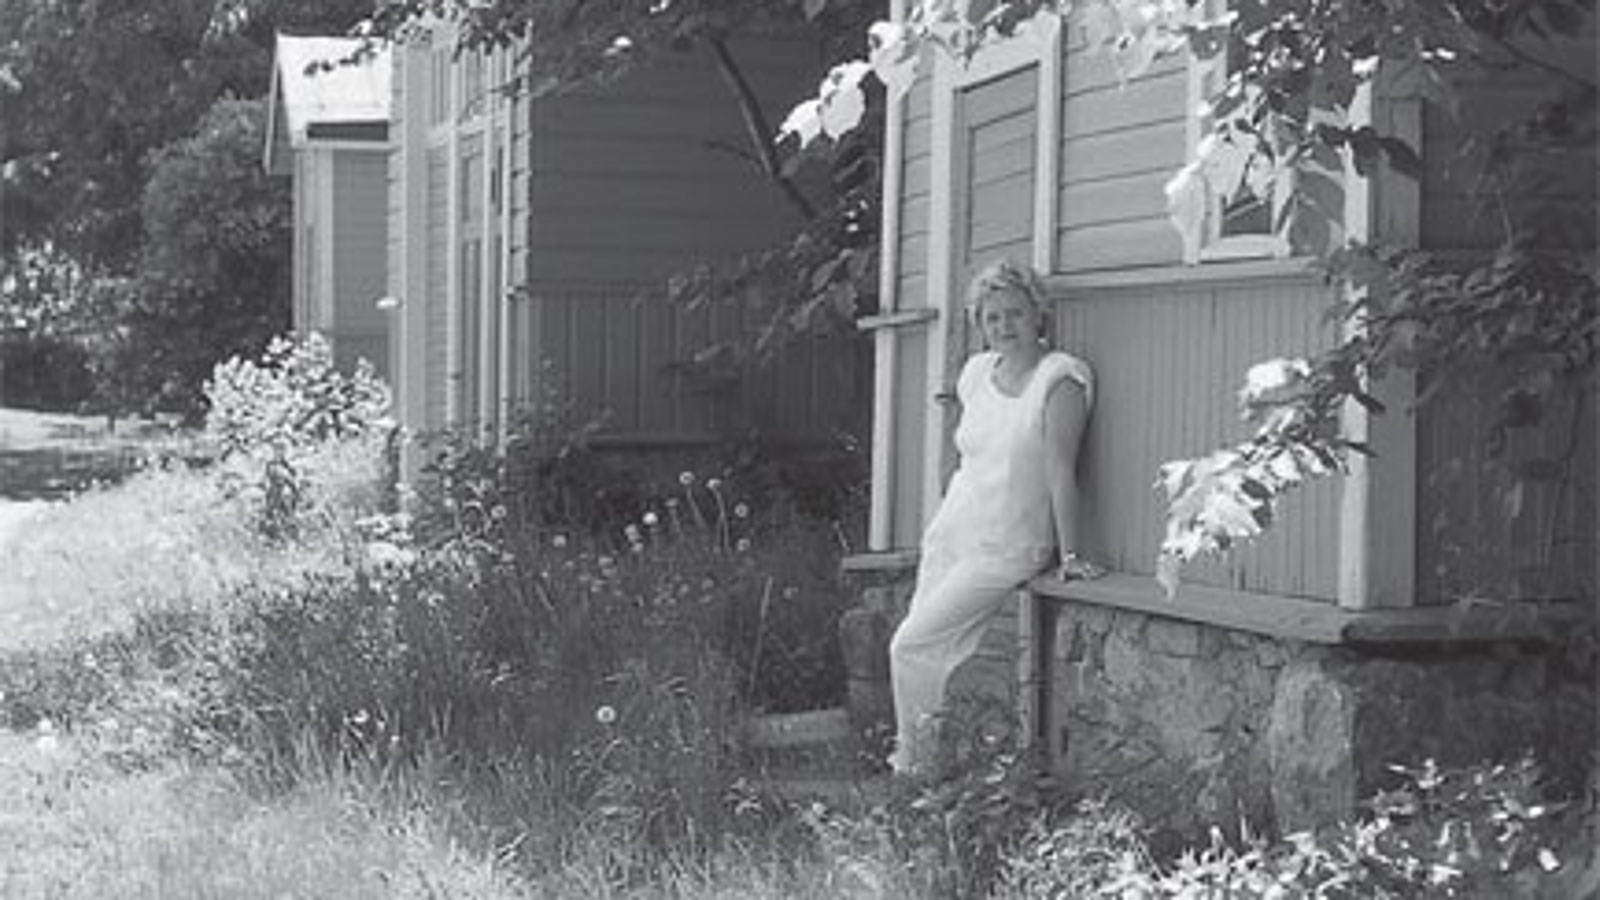 Kuvassa on Laila Hirvisaari Lappeenrannan linnoituksen puutalon pihalla.  Kuva on musta-valkoinen.